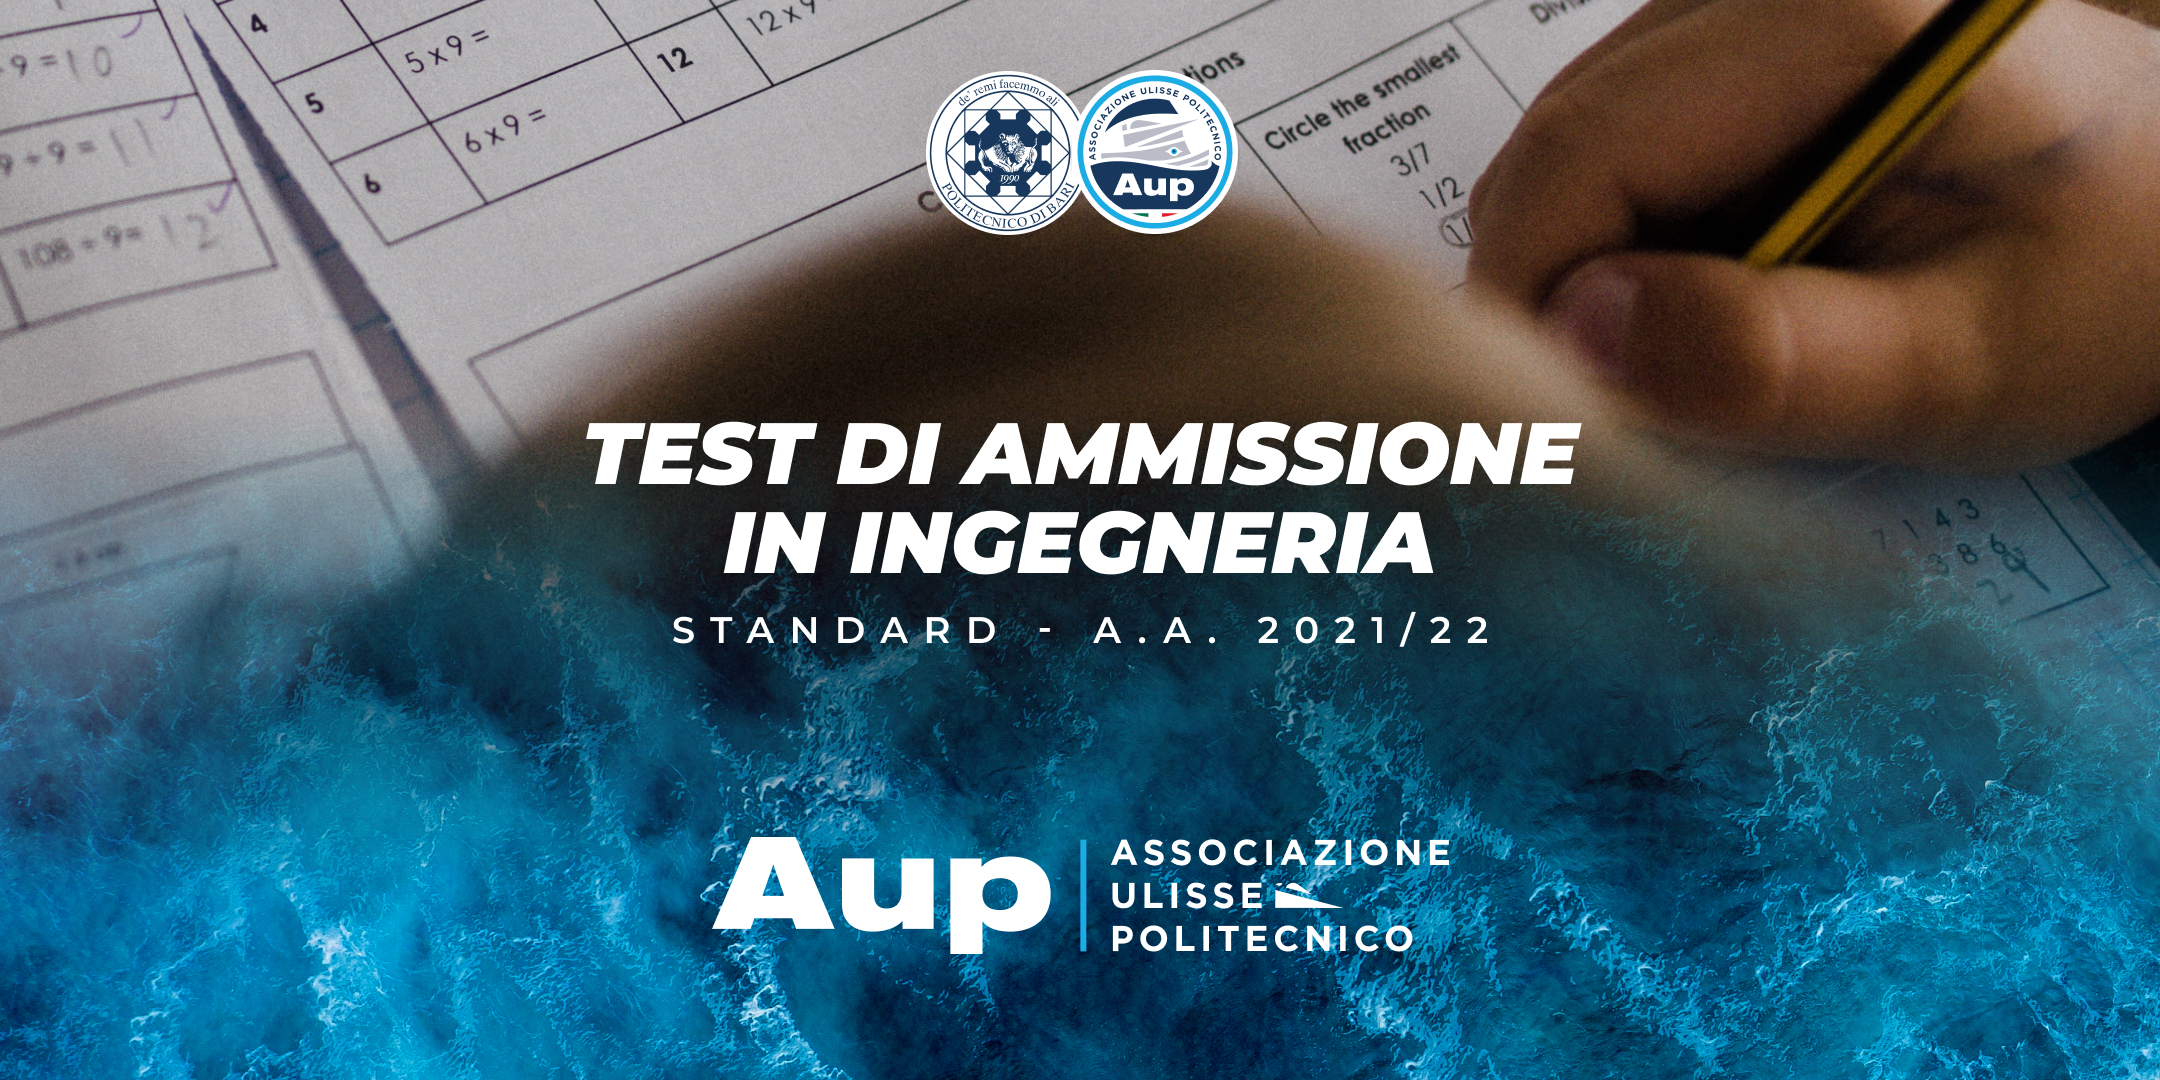 TEST DI AMMISSIONE IN INGEGNERIA - STANDARD A.A. 2021/22